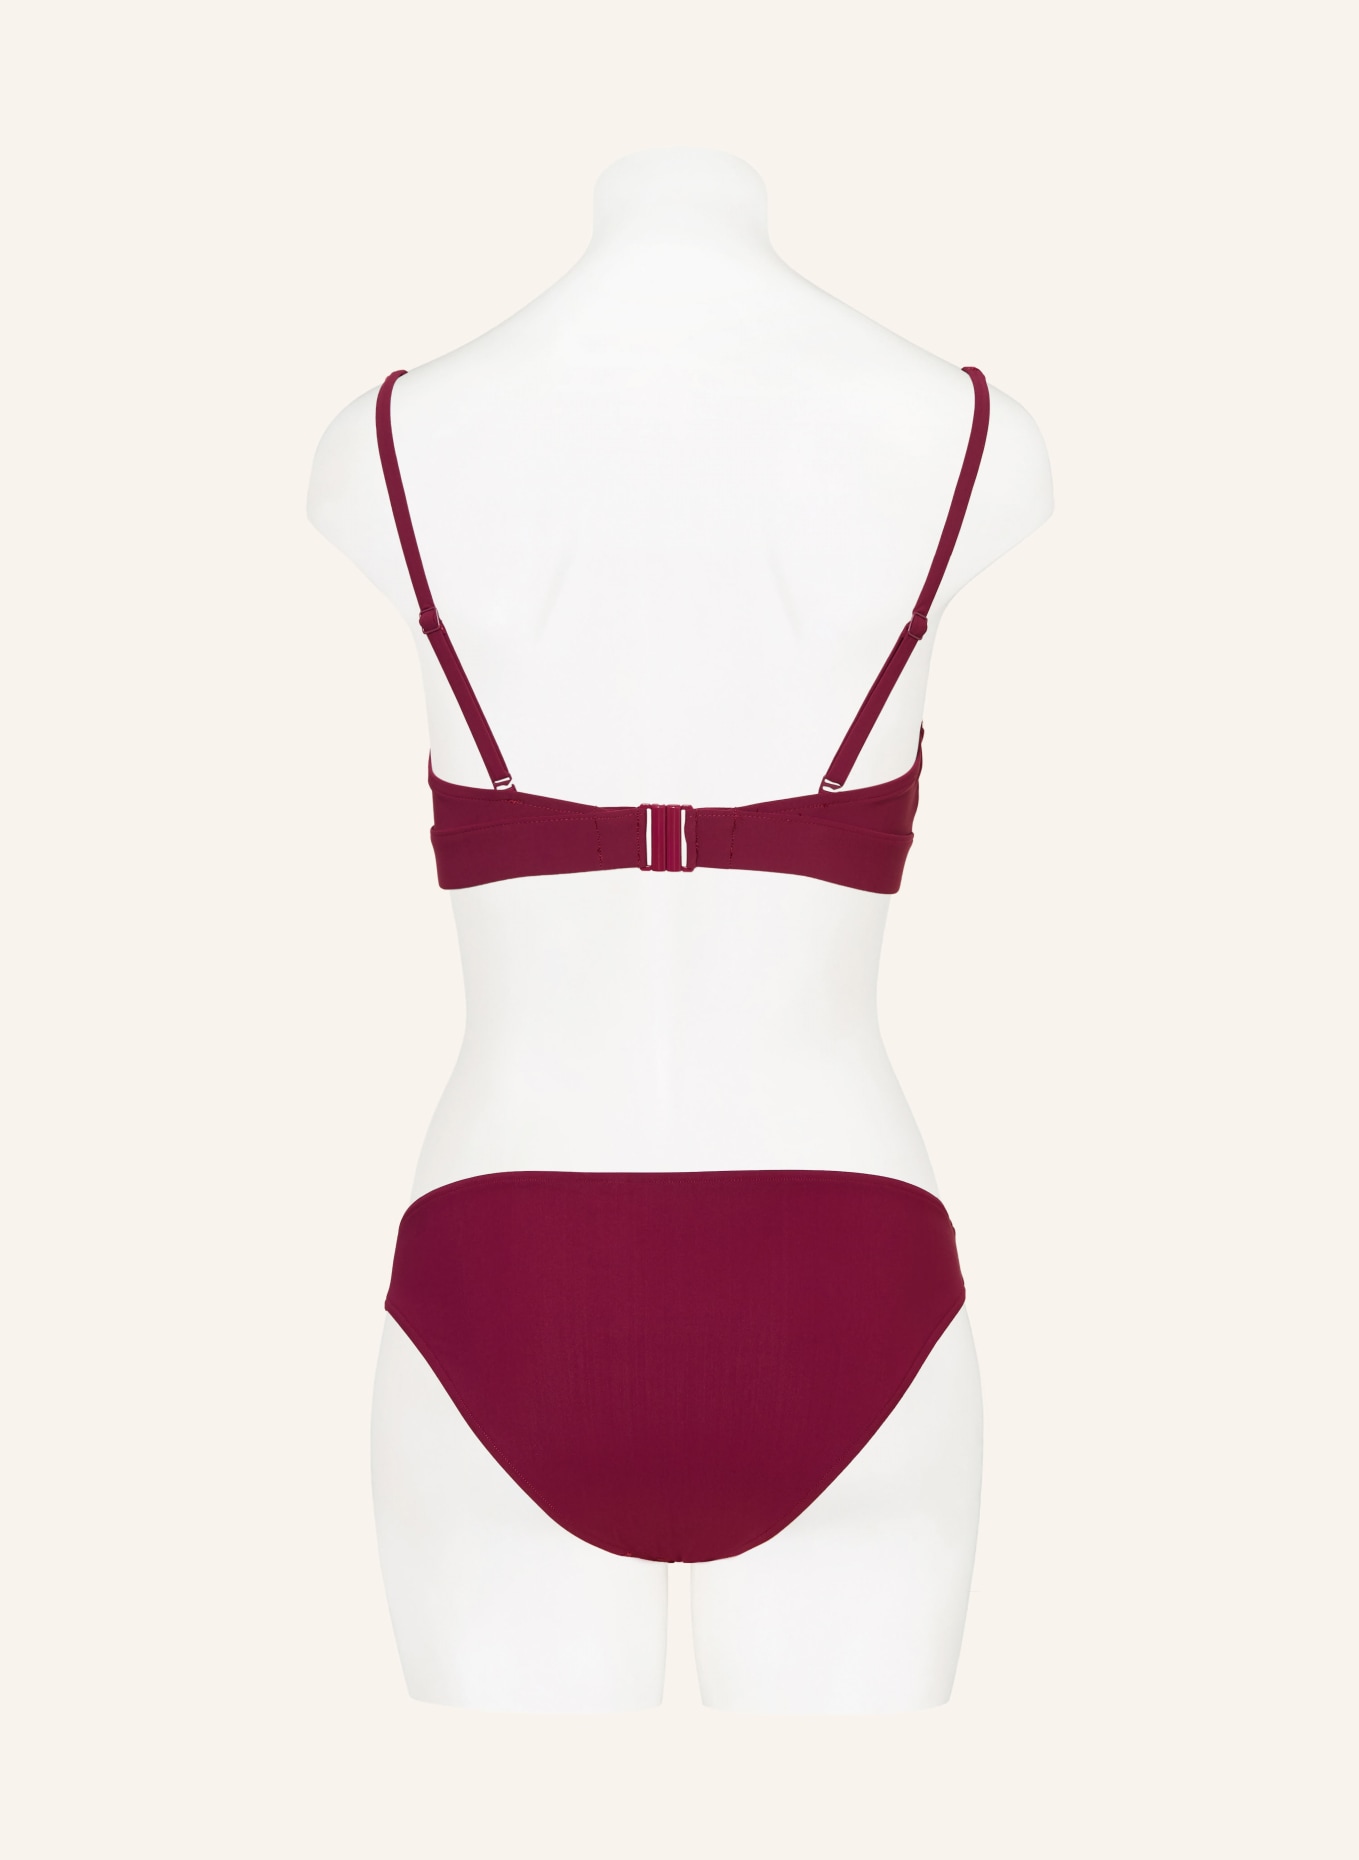 CHANTELLE Bralette bikini top GLOW in dark red